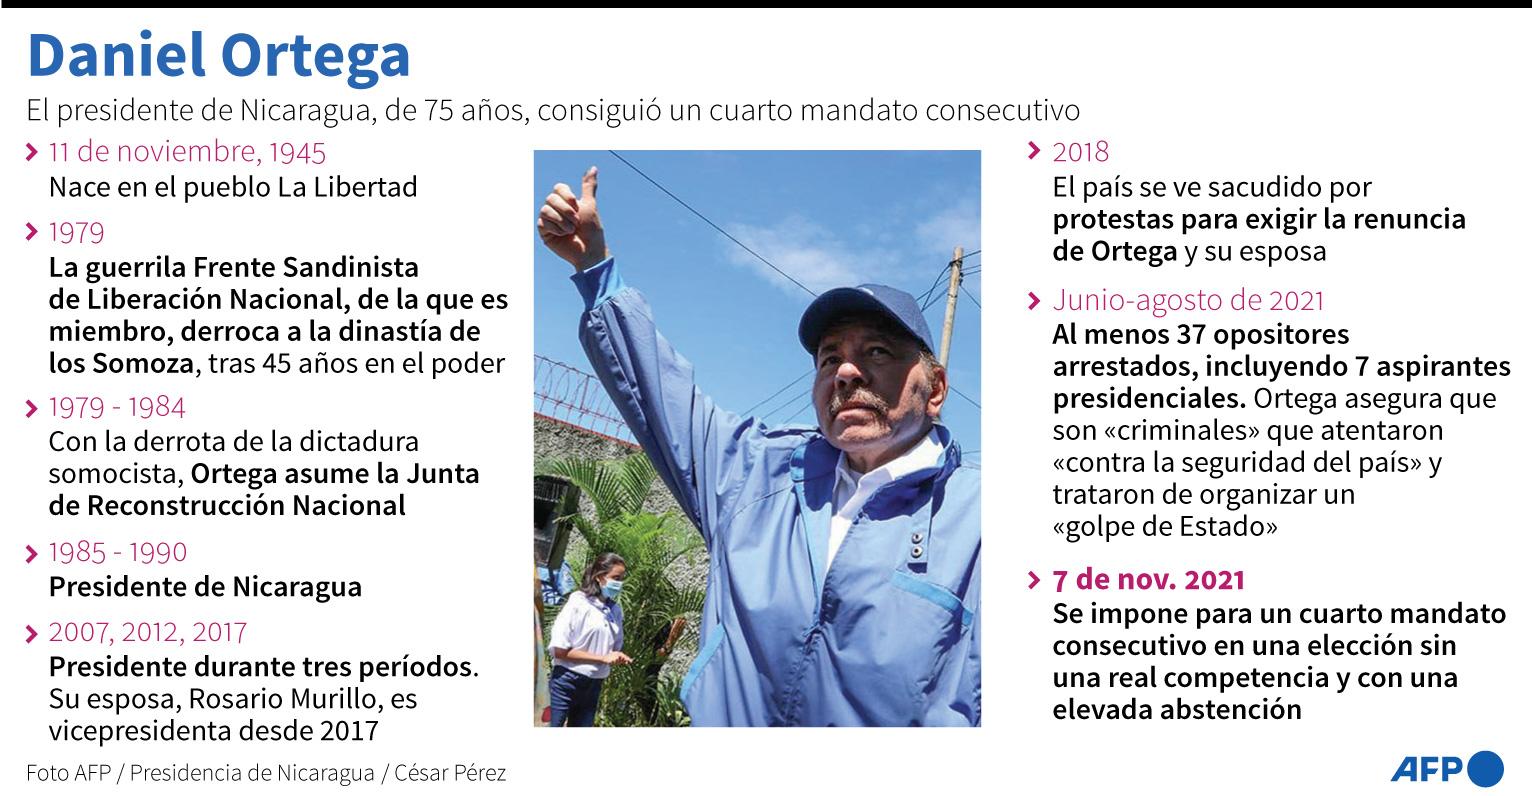 Ficha del presidente nicaragüense Daniel Ortega, que obtuvo un cuarto mandato consecutivo en las elecciones presidenciales del 7 de noviembre - AFP / AFP